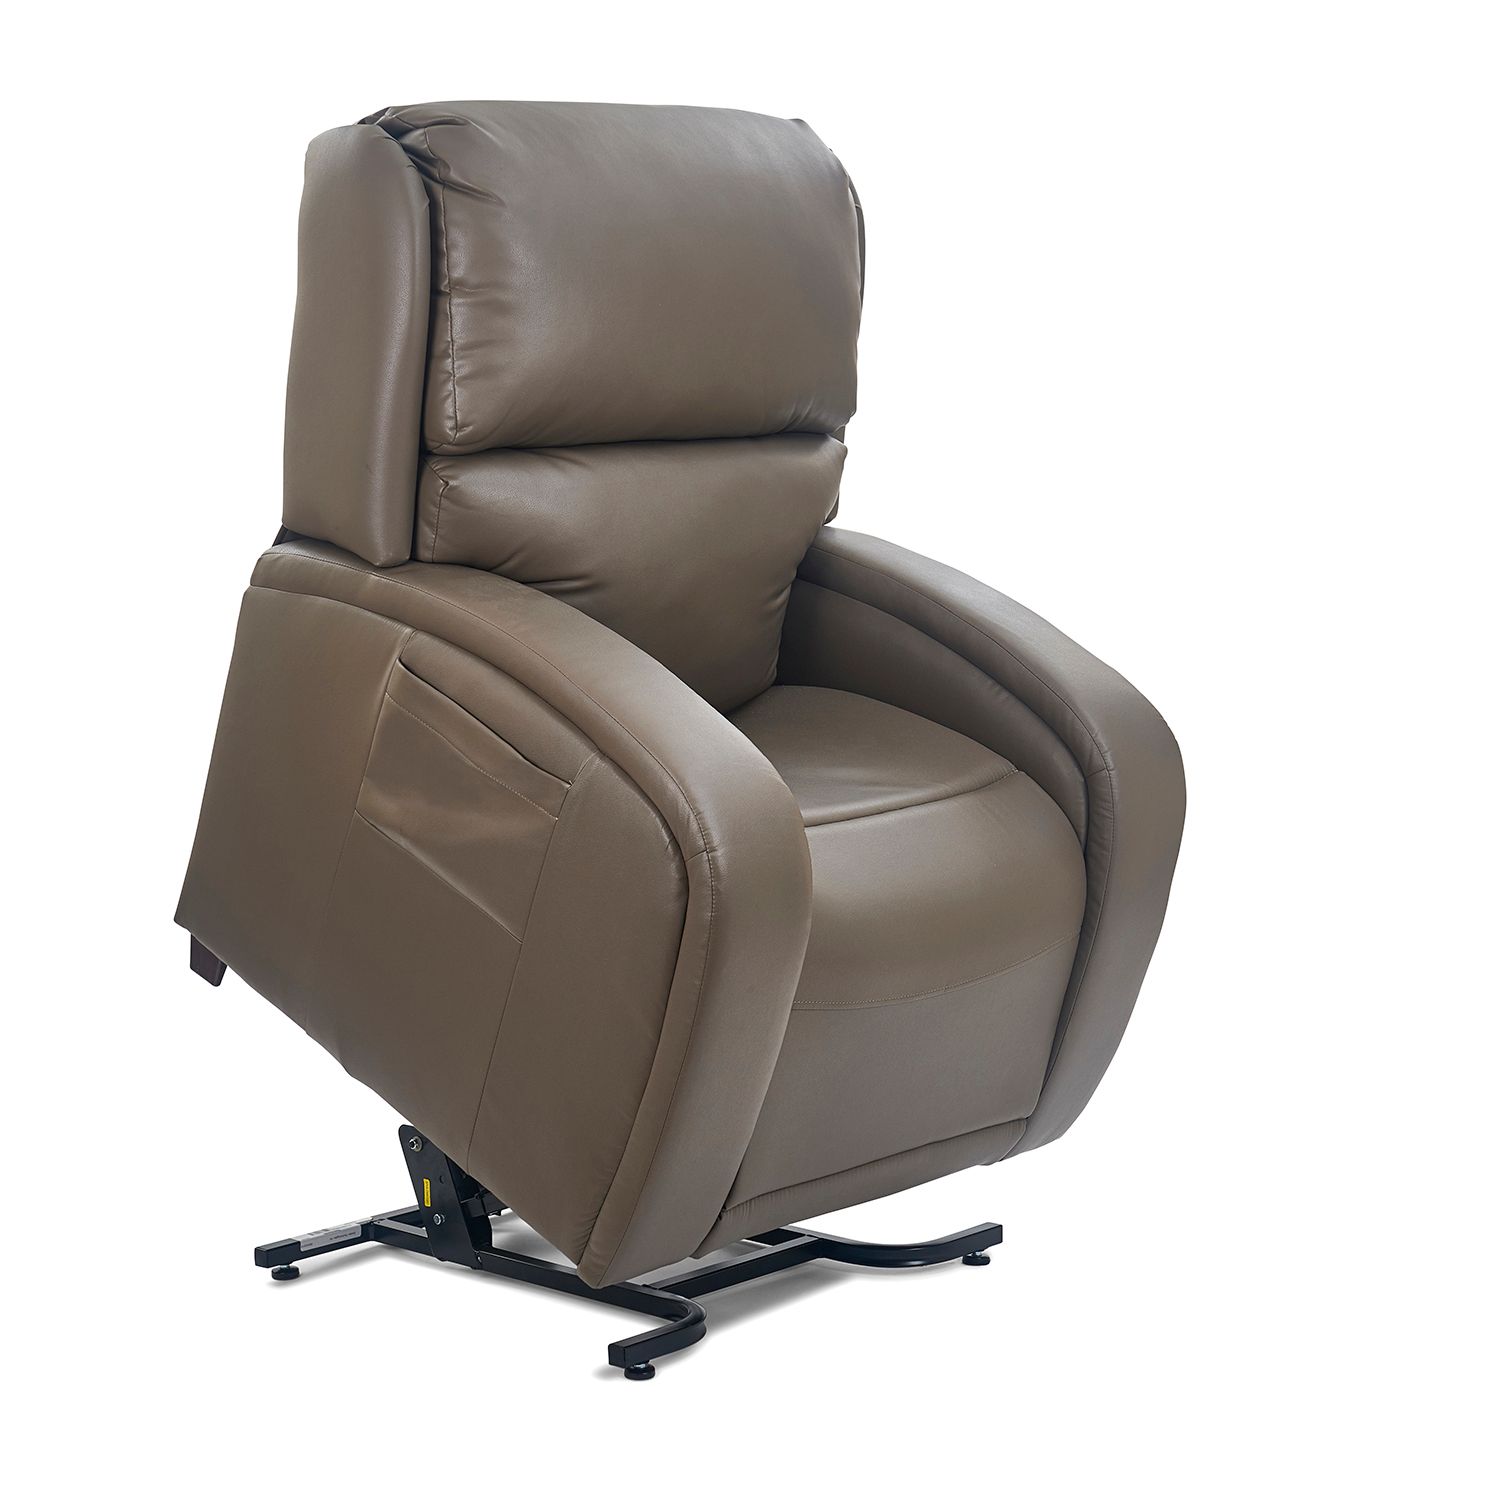 Riverside Golden Tech lift chair recliner twilight ezsleeper cloud viva relaxer maxi-comfort